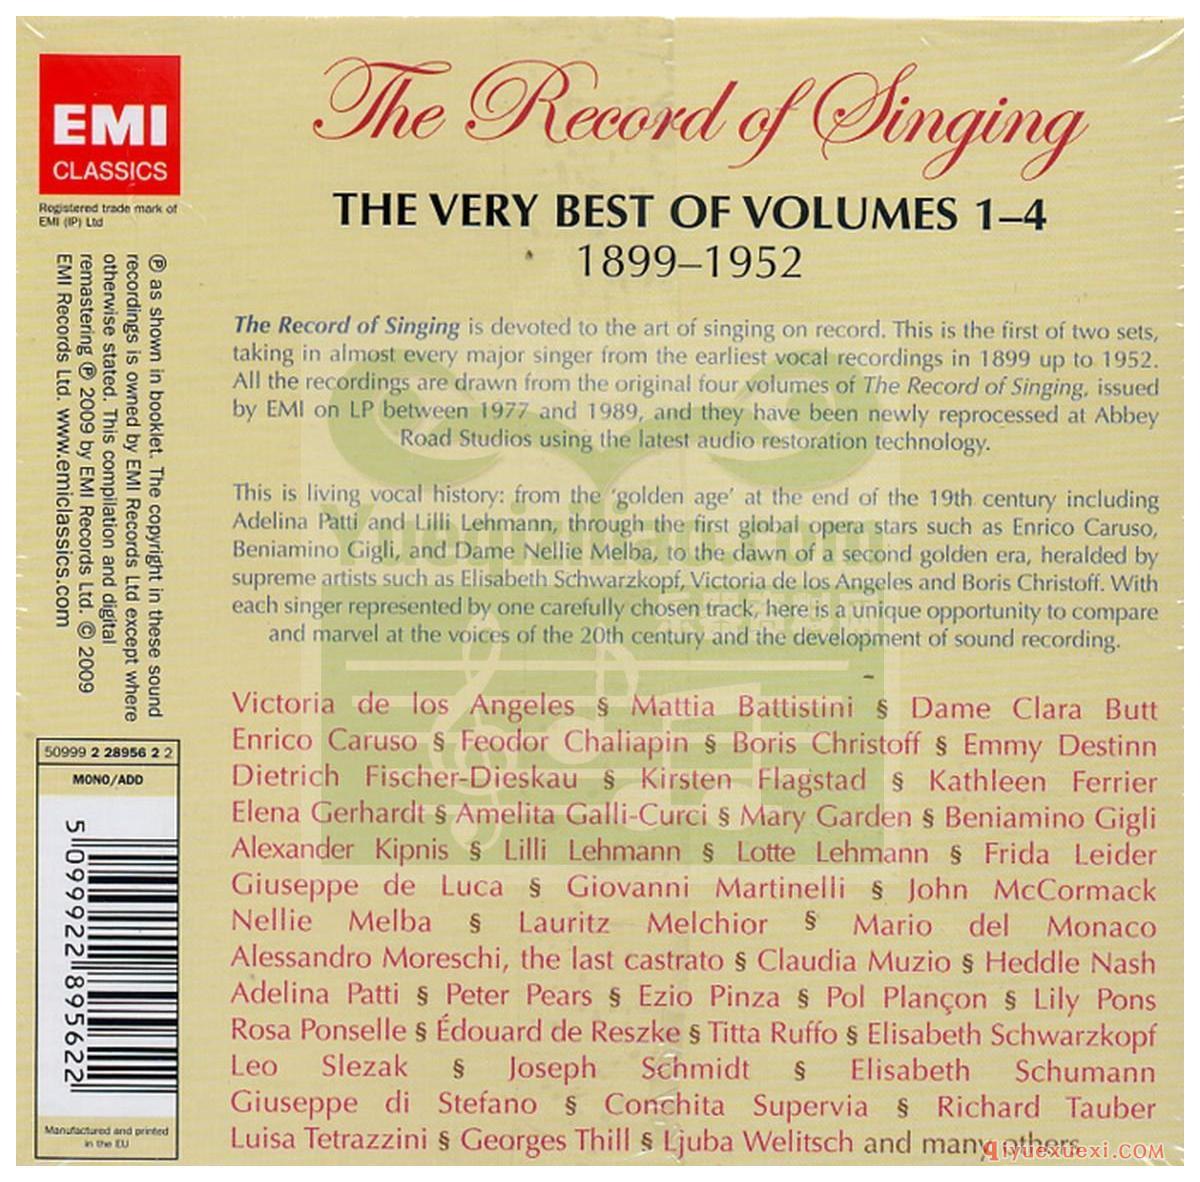 歌剧录音下载 | The Record of Singing, 1899-1952 - The Very Best of Volumes 1-4 [10CD]FLAC专辑